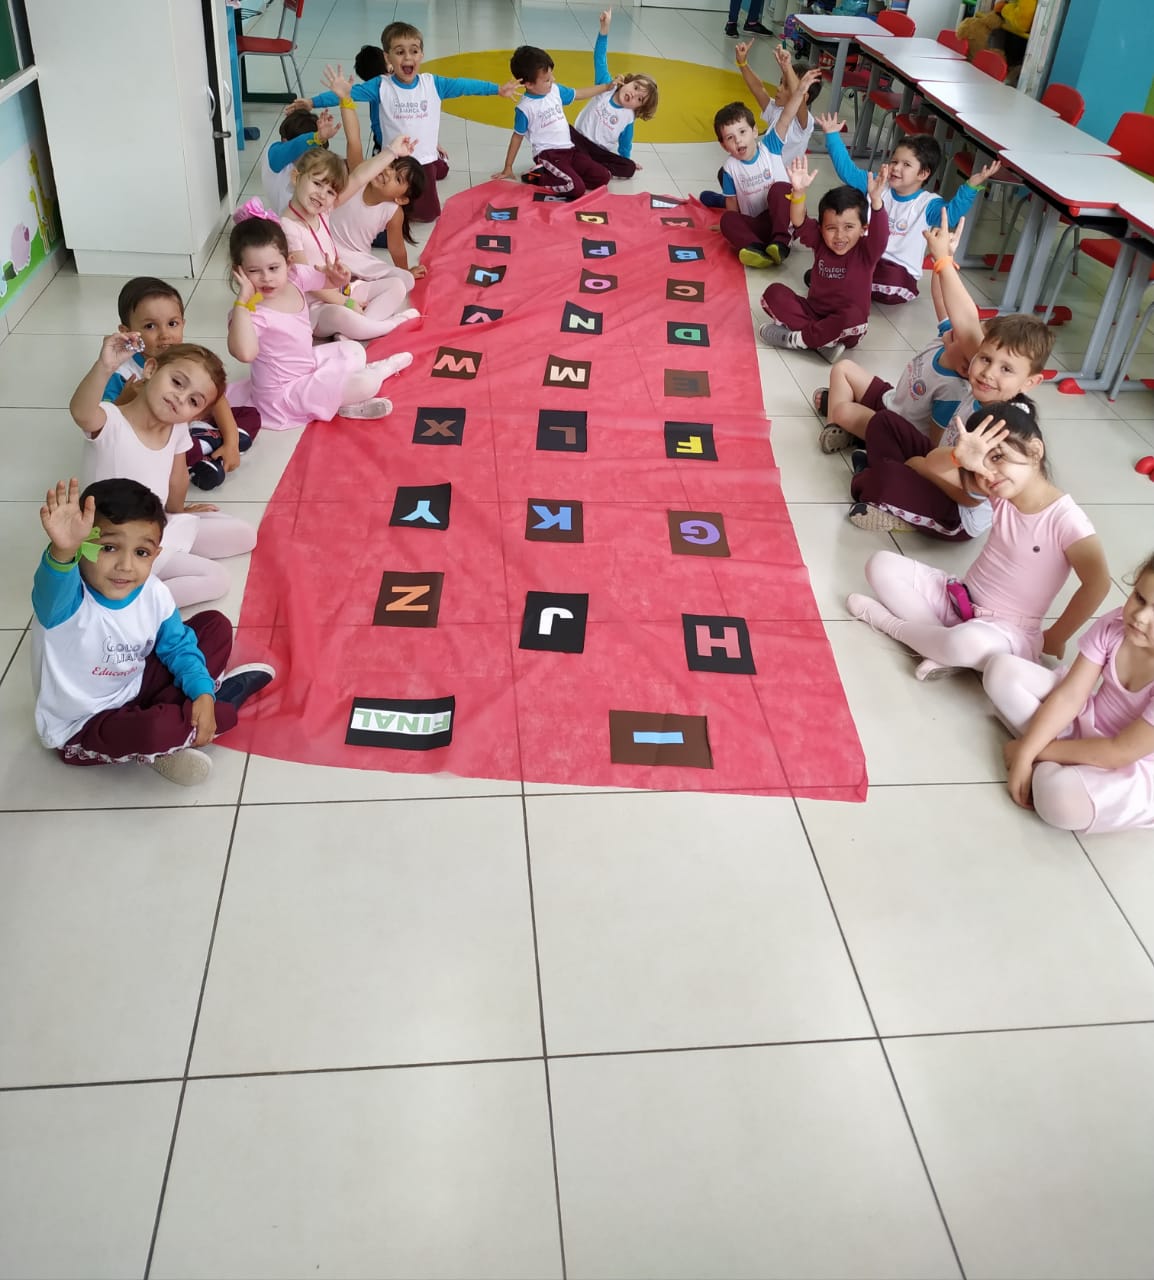 Jogo: Trilha do Alfabeto - Educação Infantil 